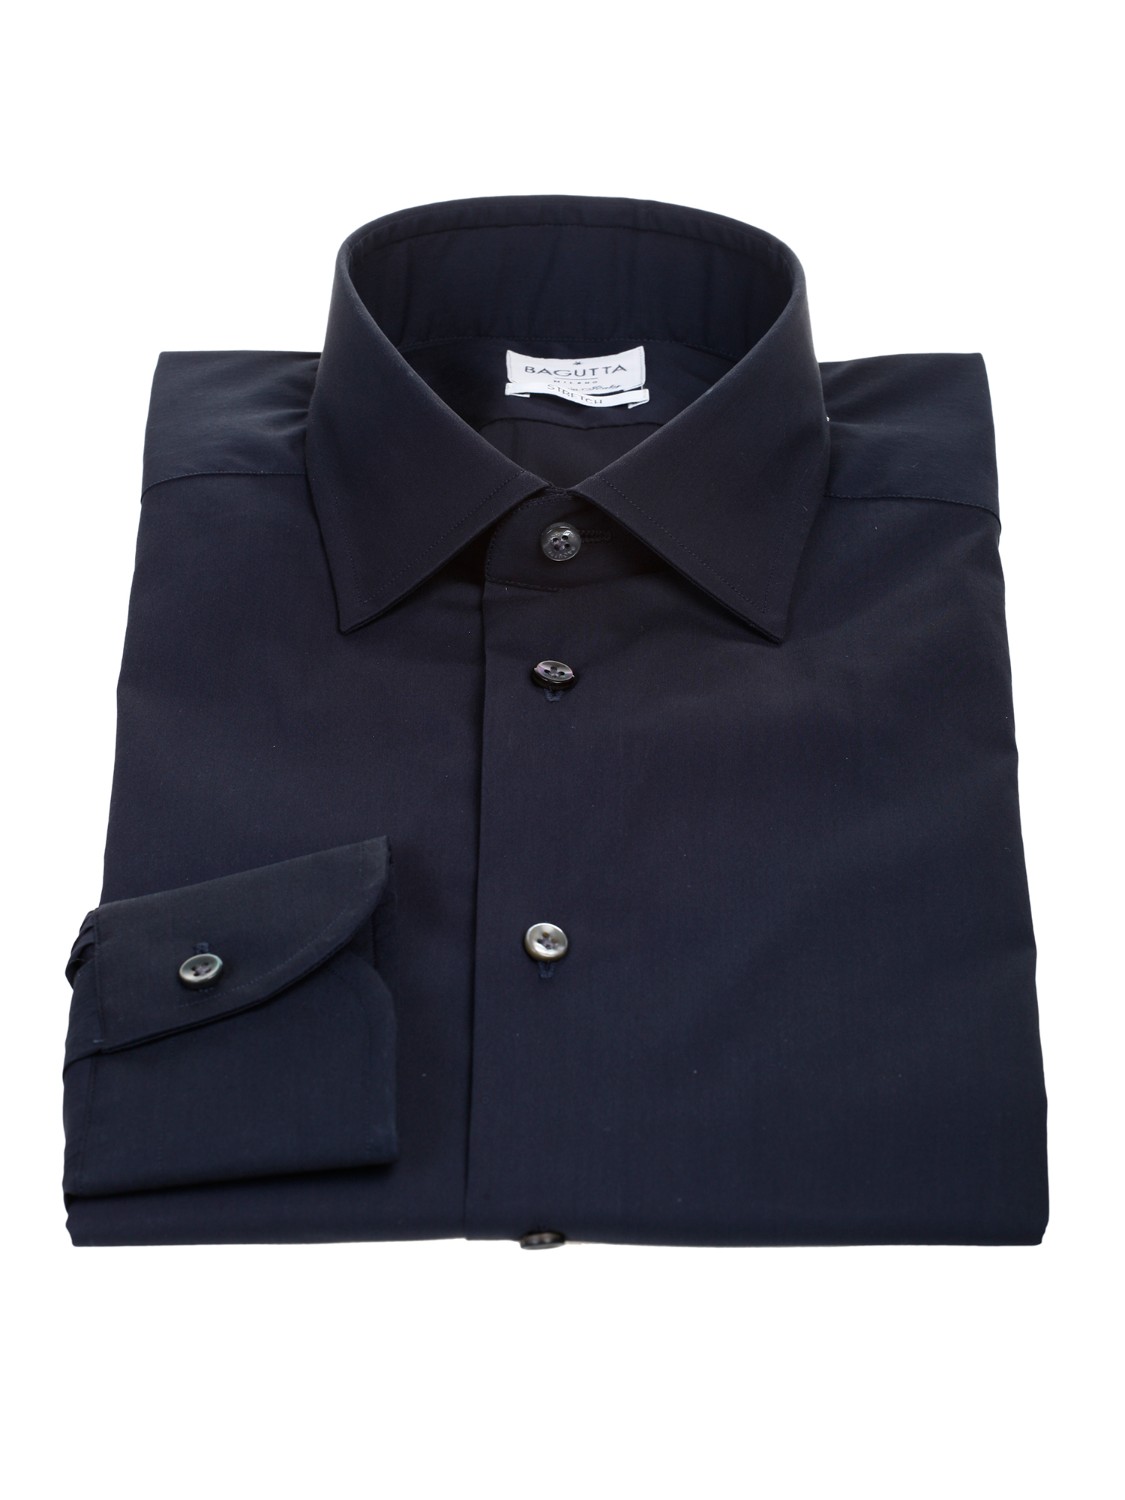 shop BAGUTTA  Camicia: Bagutta camicia stretch in cotone, blu.
Colletto alla francese. 
Slim fit. 
Composizione: 73% cotone 24% poliammide 3% elastan. 
Made in Italy.. 380 EBL CN9672-051 number 4766932